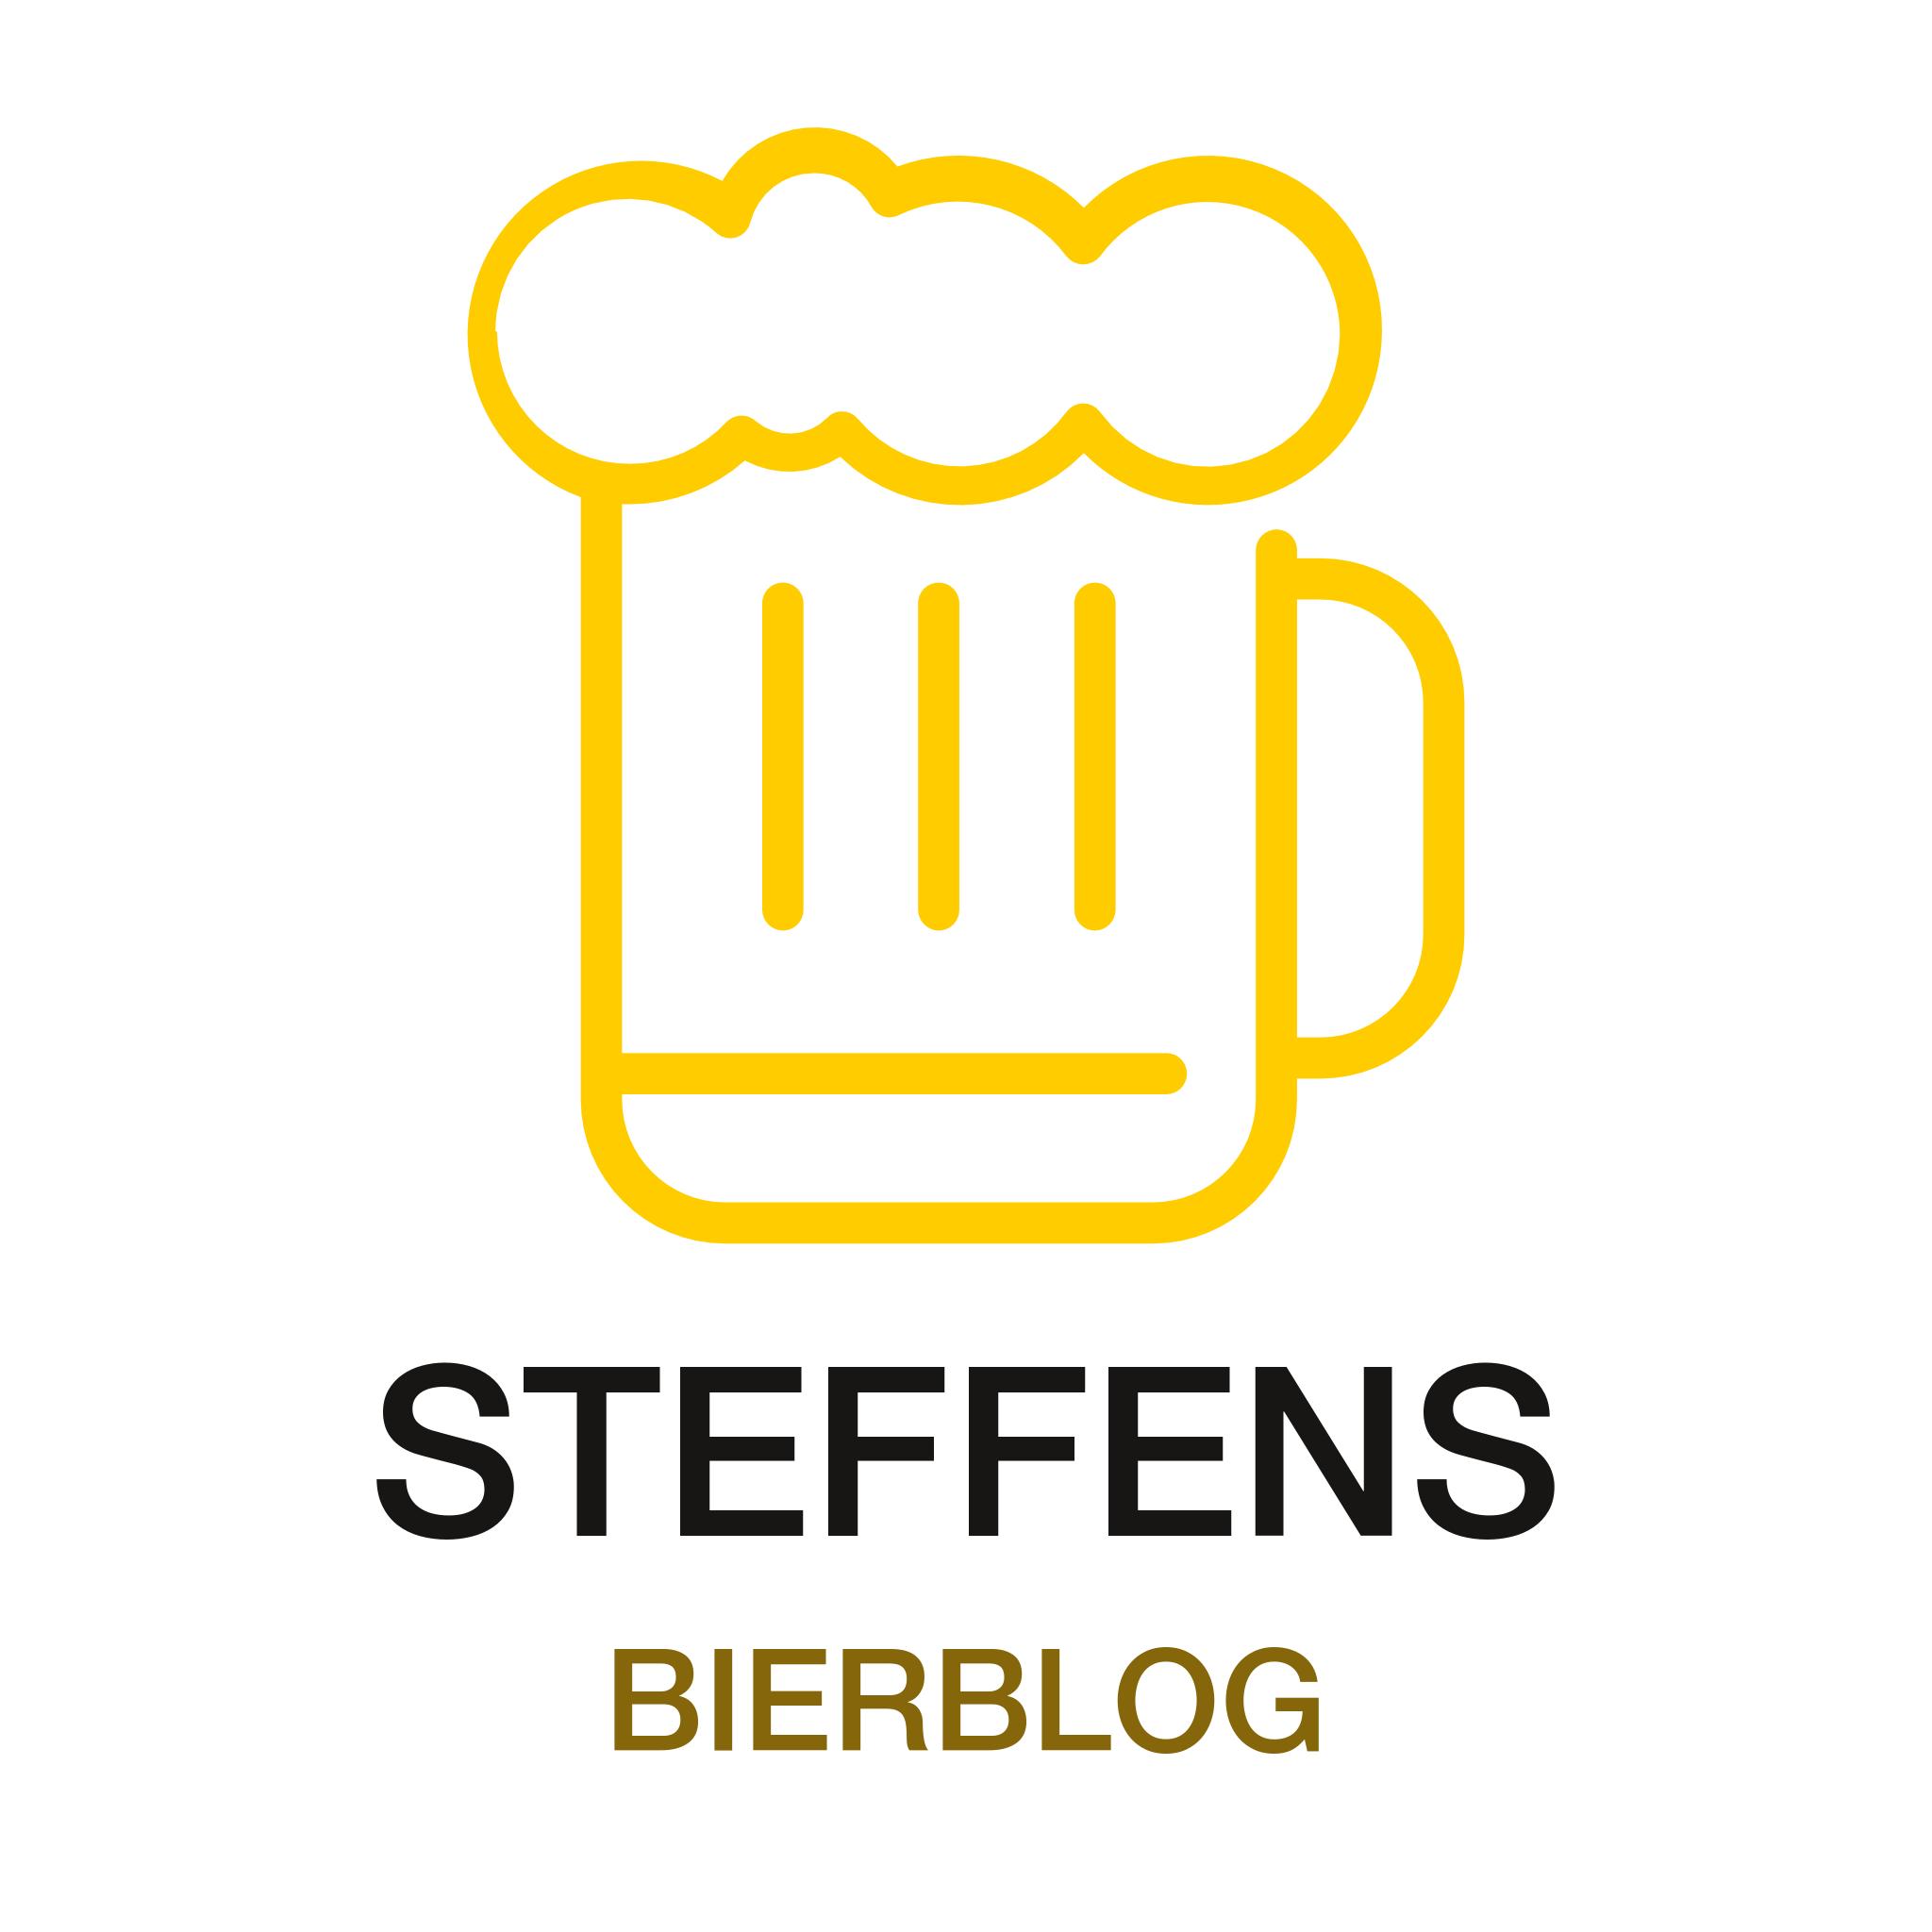 Logo von Steffens Bierblog: Ein Glas ist mit Bier gefüllt und hat eine Schaumkrone, darunter steht in zwei Zeilen Steffens Bierblog